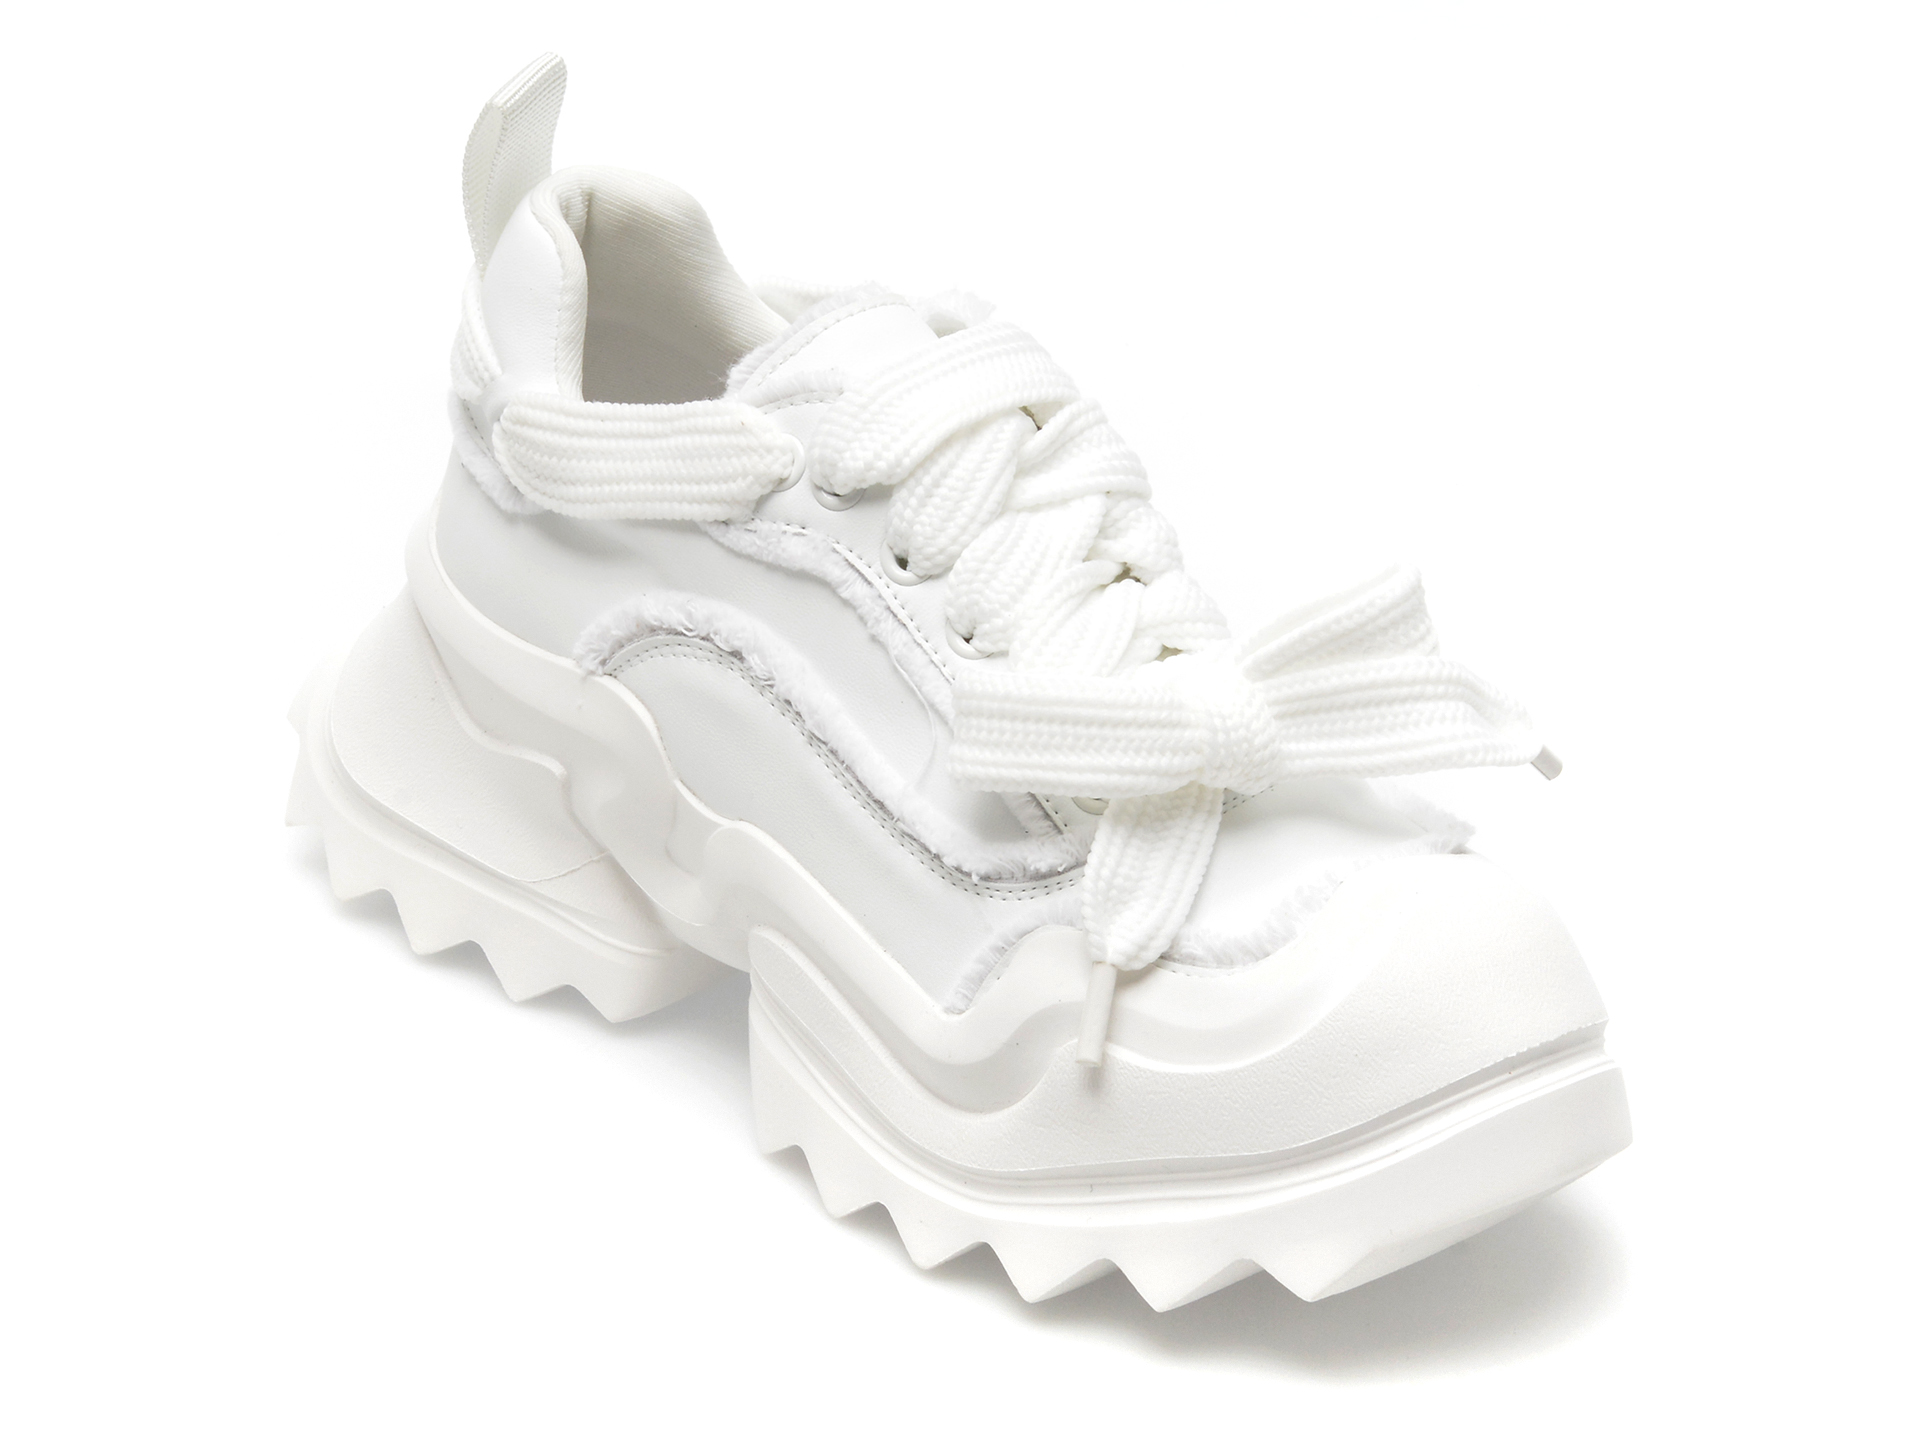 Pantofi EPICA albi, 8650, din piele naturala Femei 2023-05-28